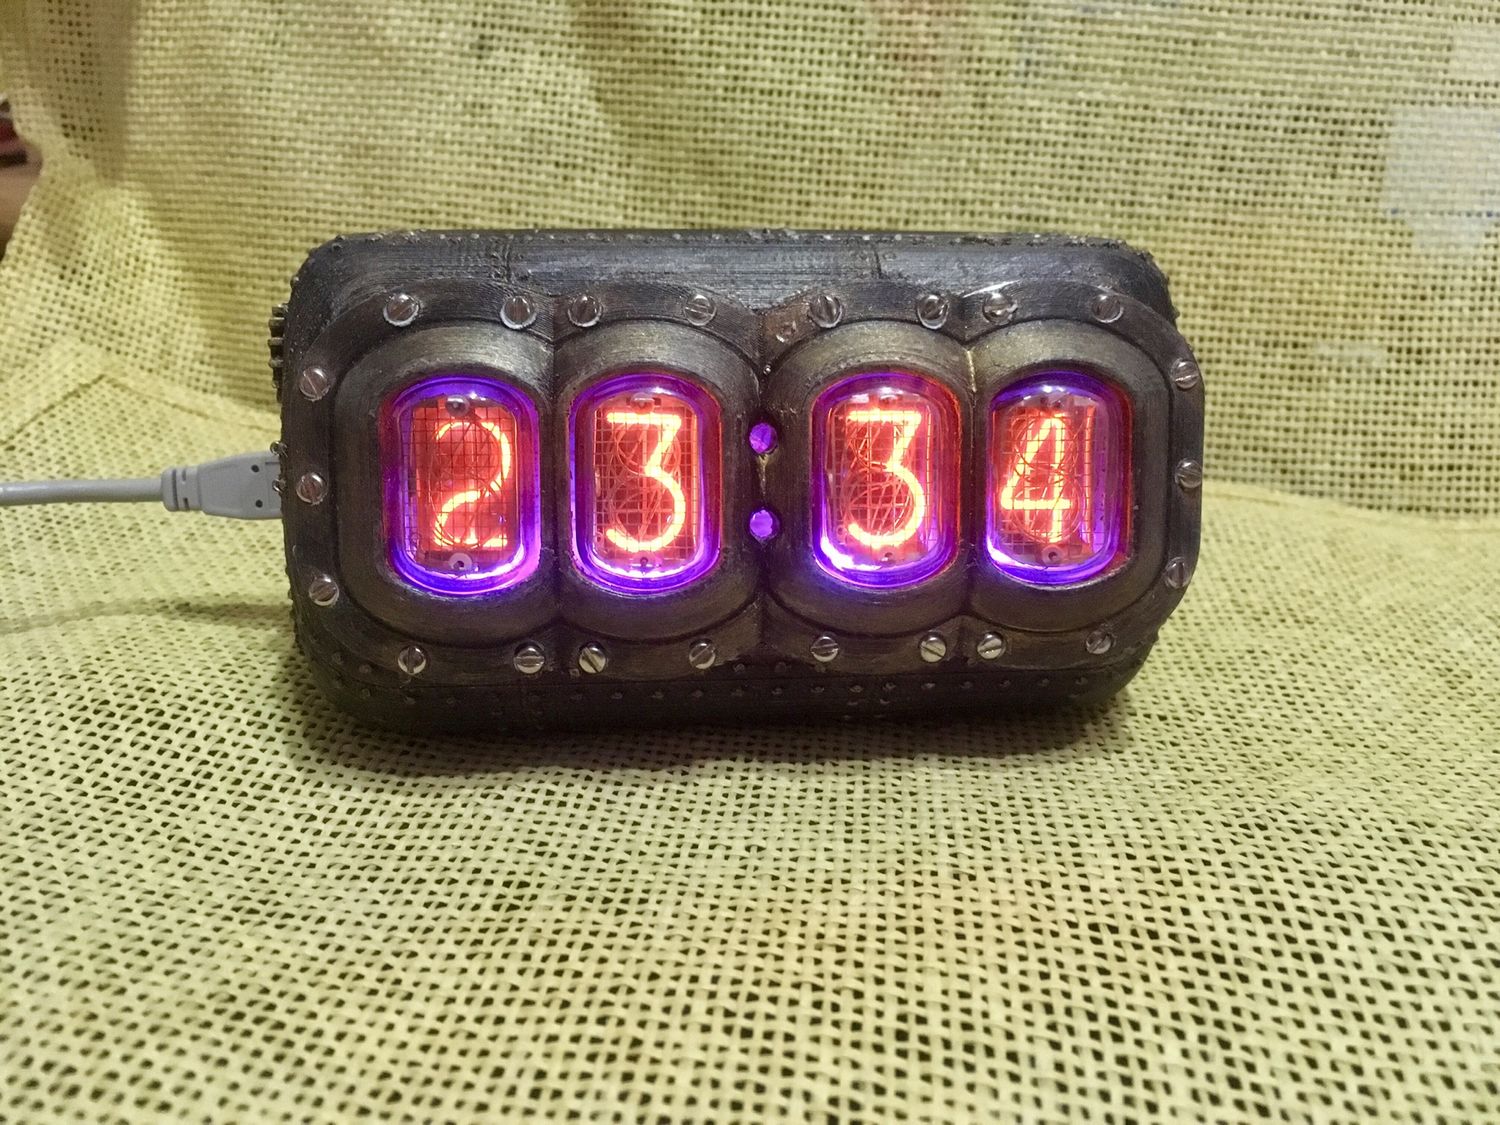 Nixie clock часы на газоразрядных индикаторах ИН-12, Часы классические, Москва,  Фото №1